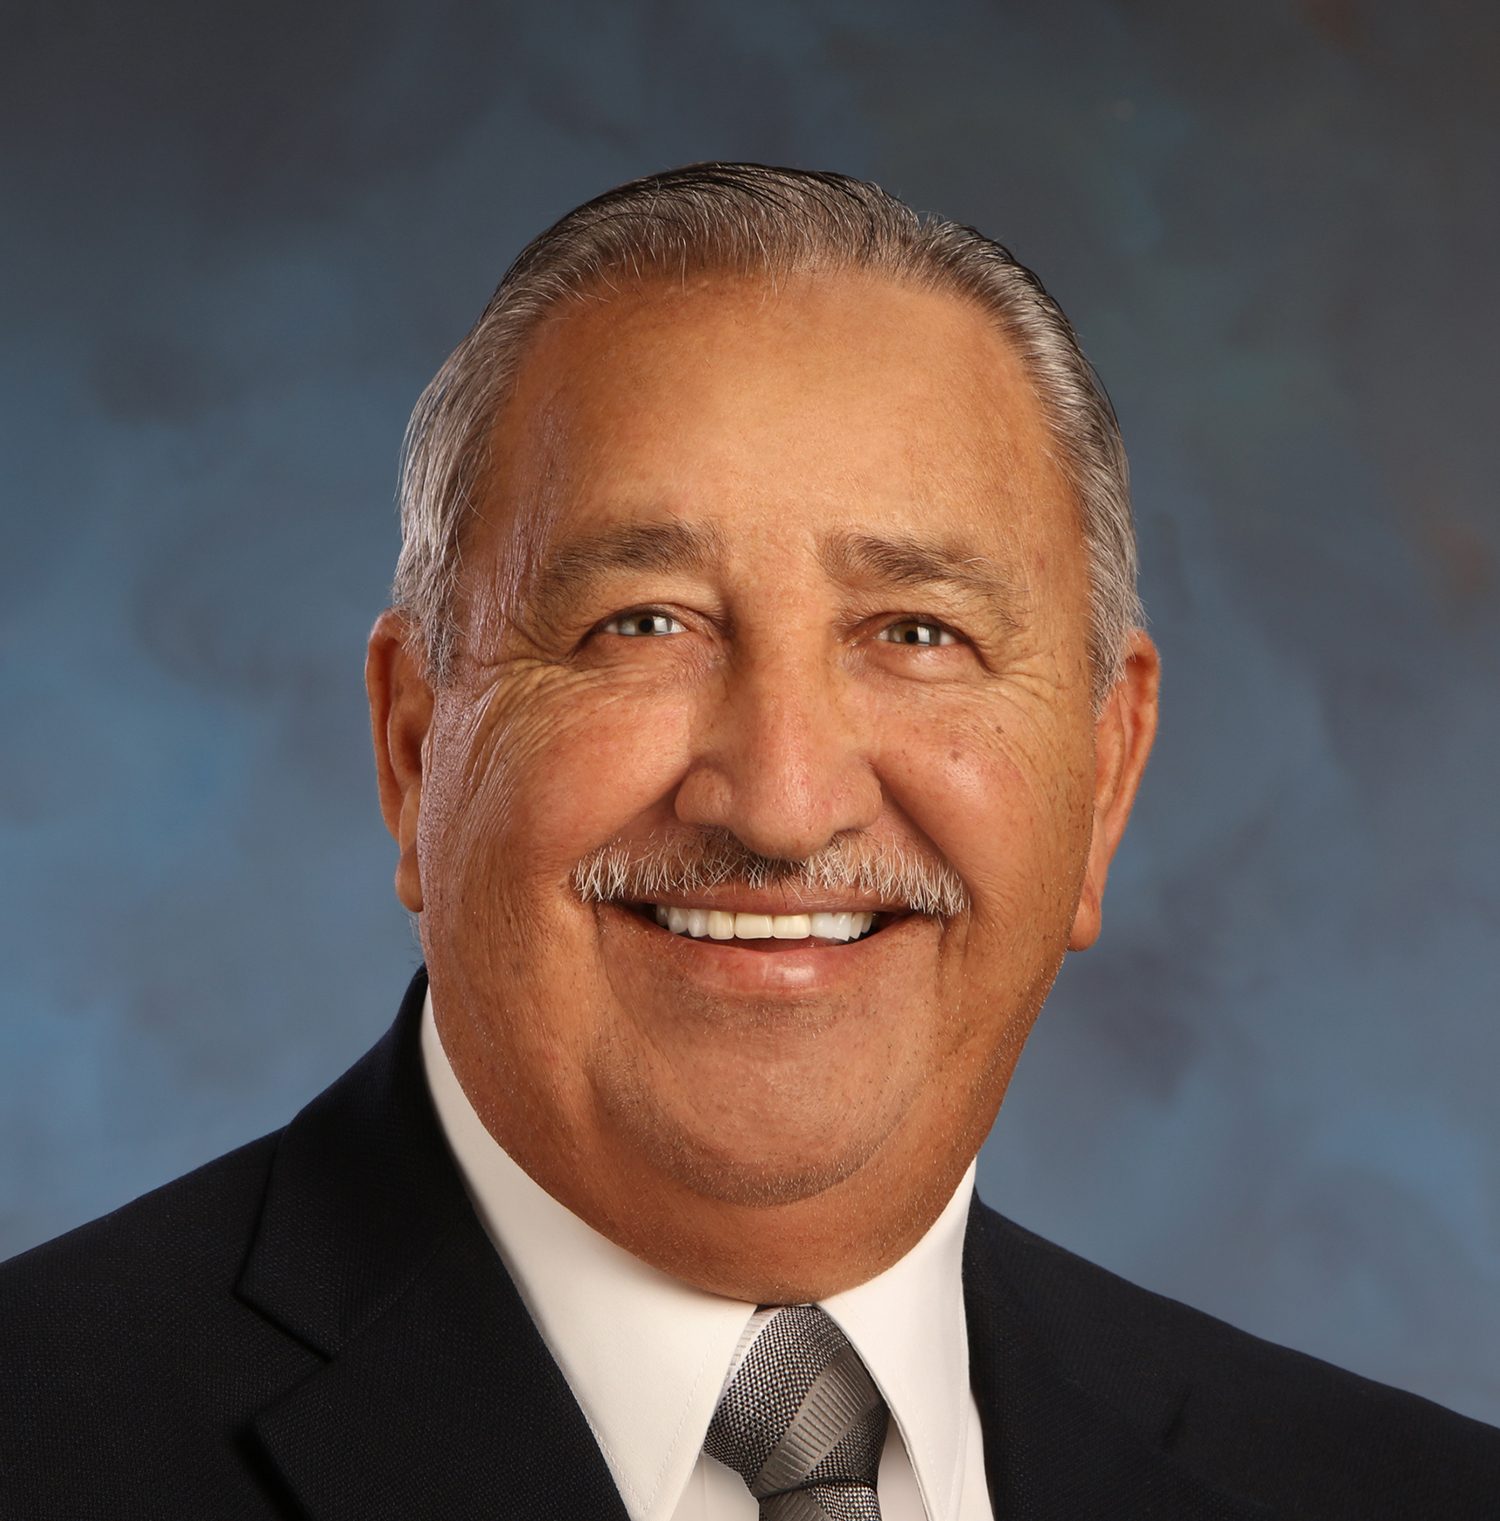 Del Mar, community mourn loss of Hector ‘Coach’ Salinas